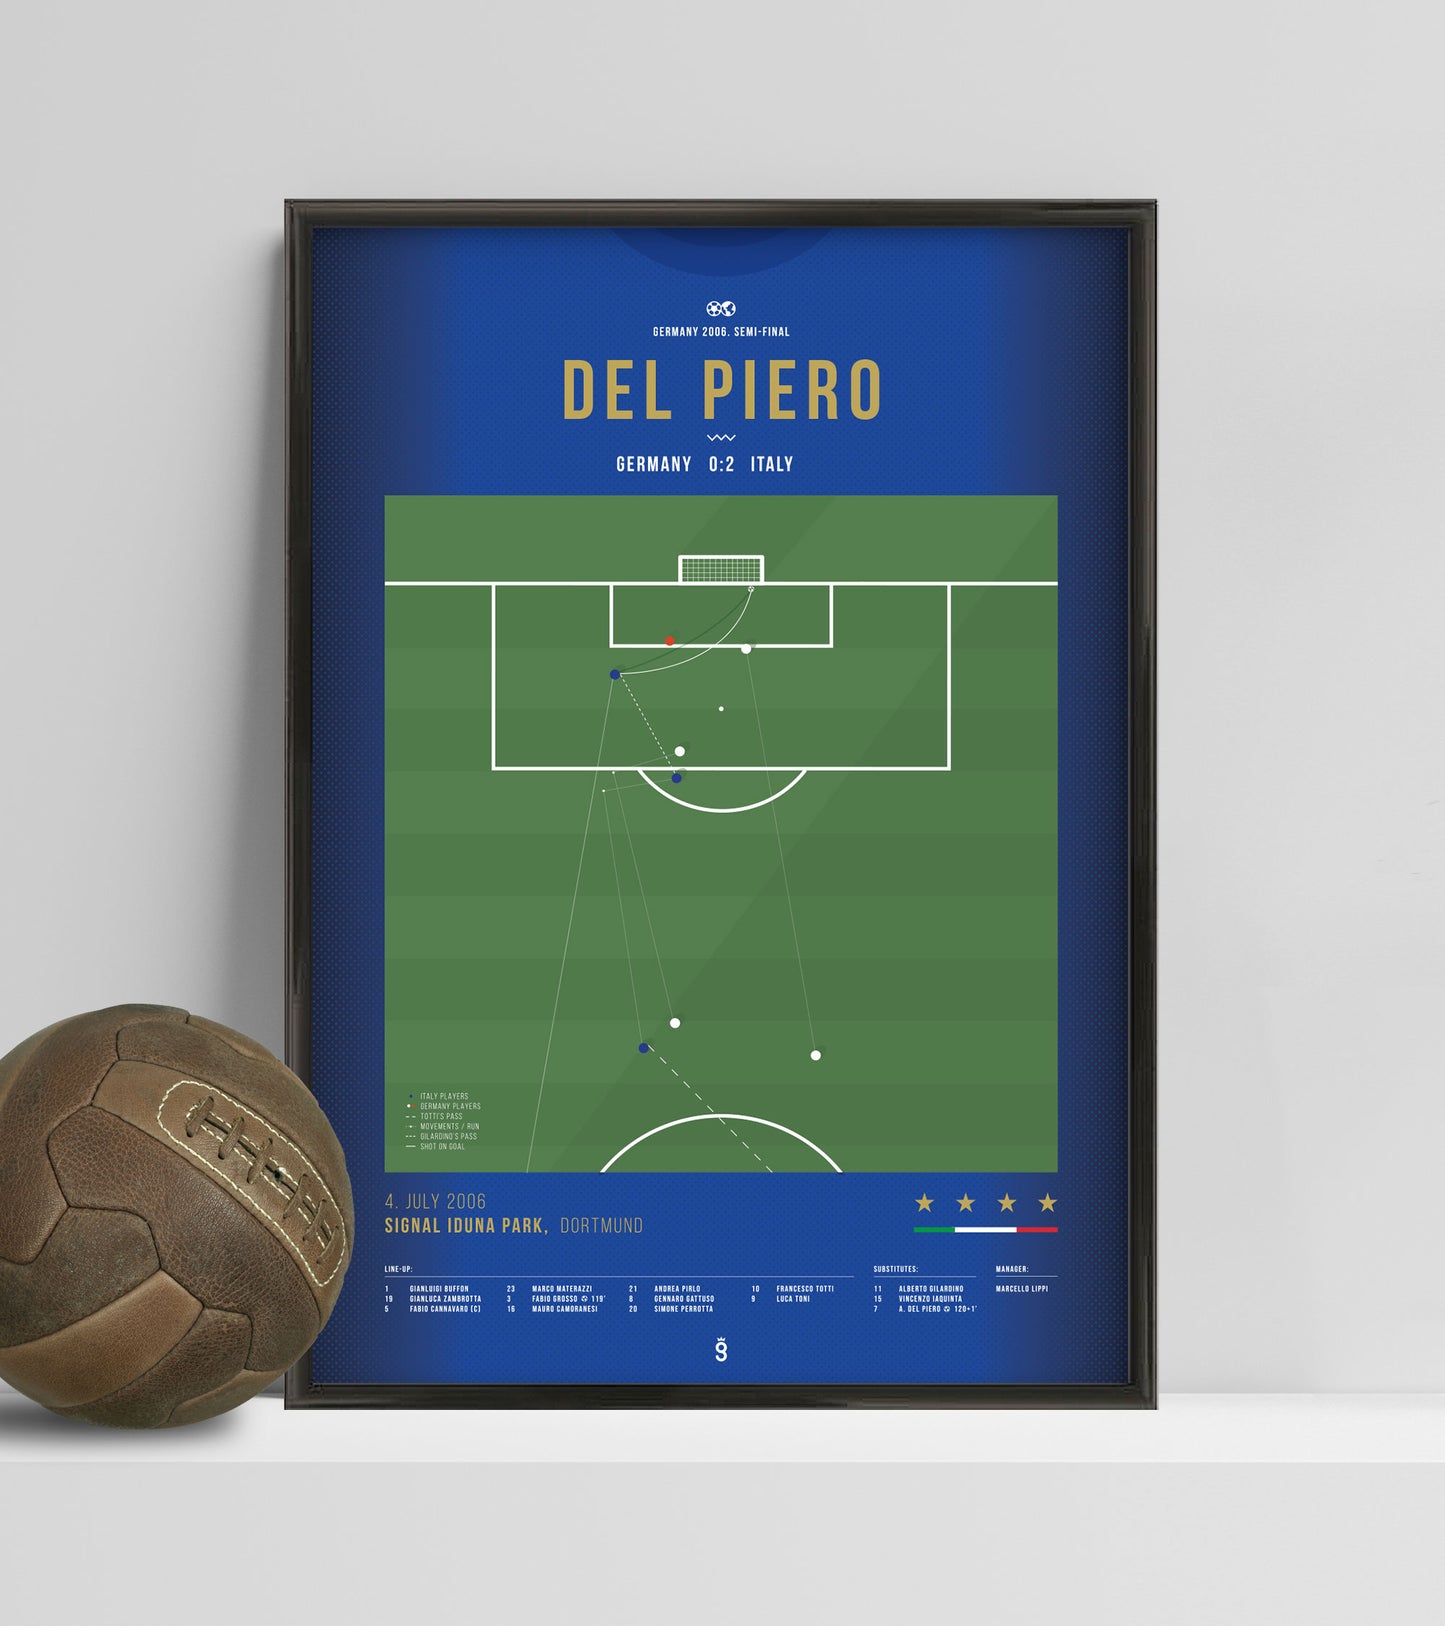 Del Piero vainqueur de l'Allemagne